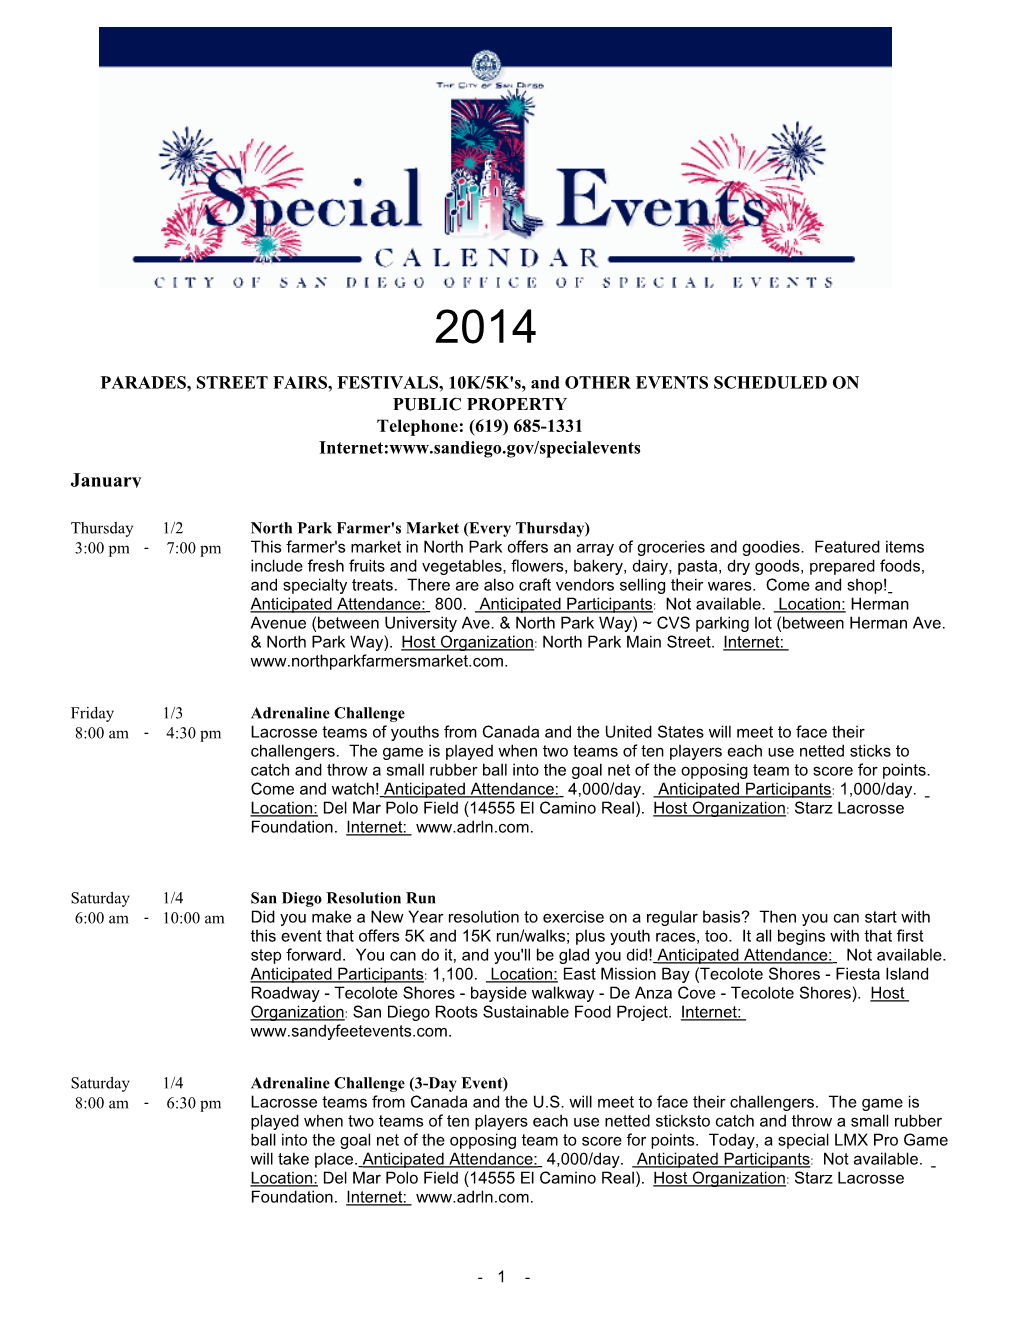 Special Events Calendar